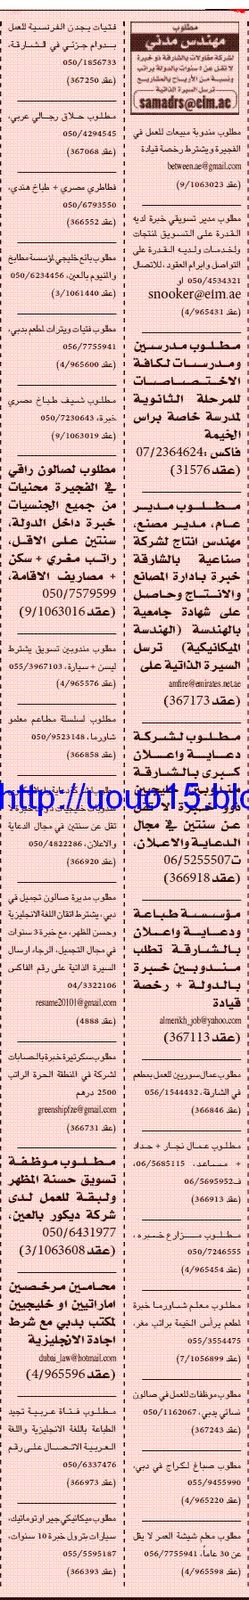  وظائف جريده الخليج - السبت 23 ابريل 2011 1